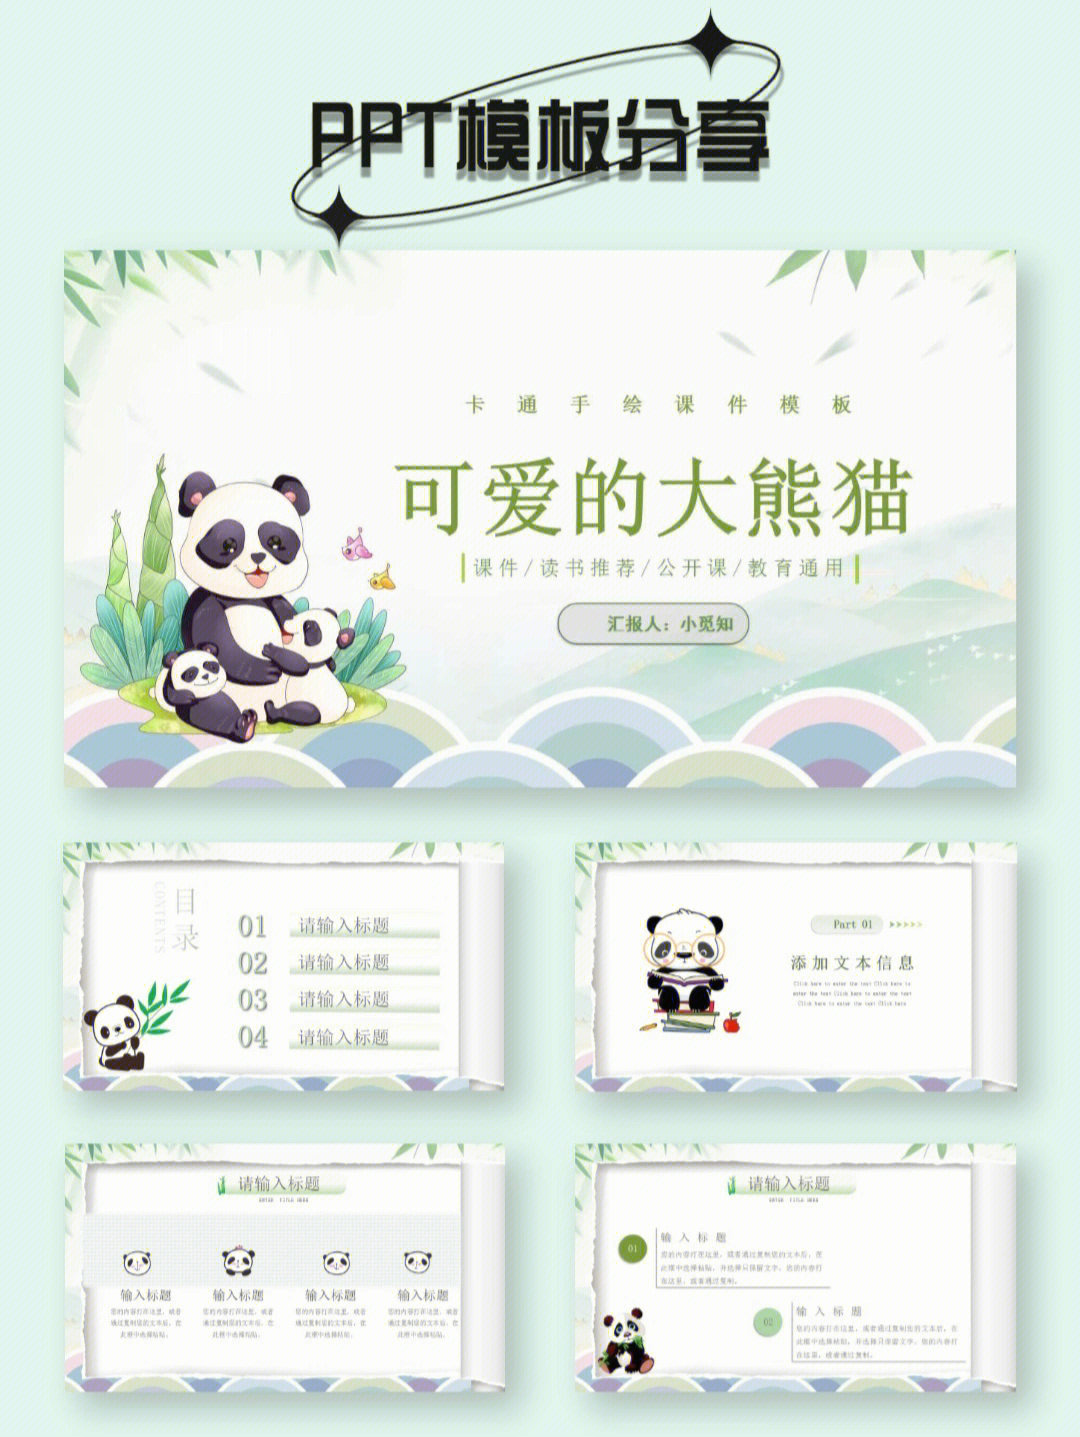 ppt分享可爱大熊猫卡通手绘幼儿园说课模板